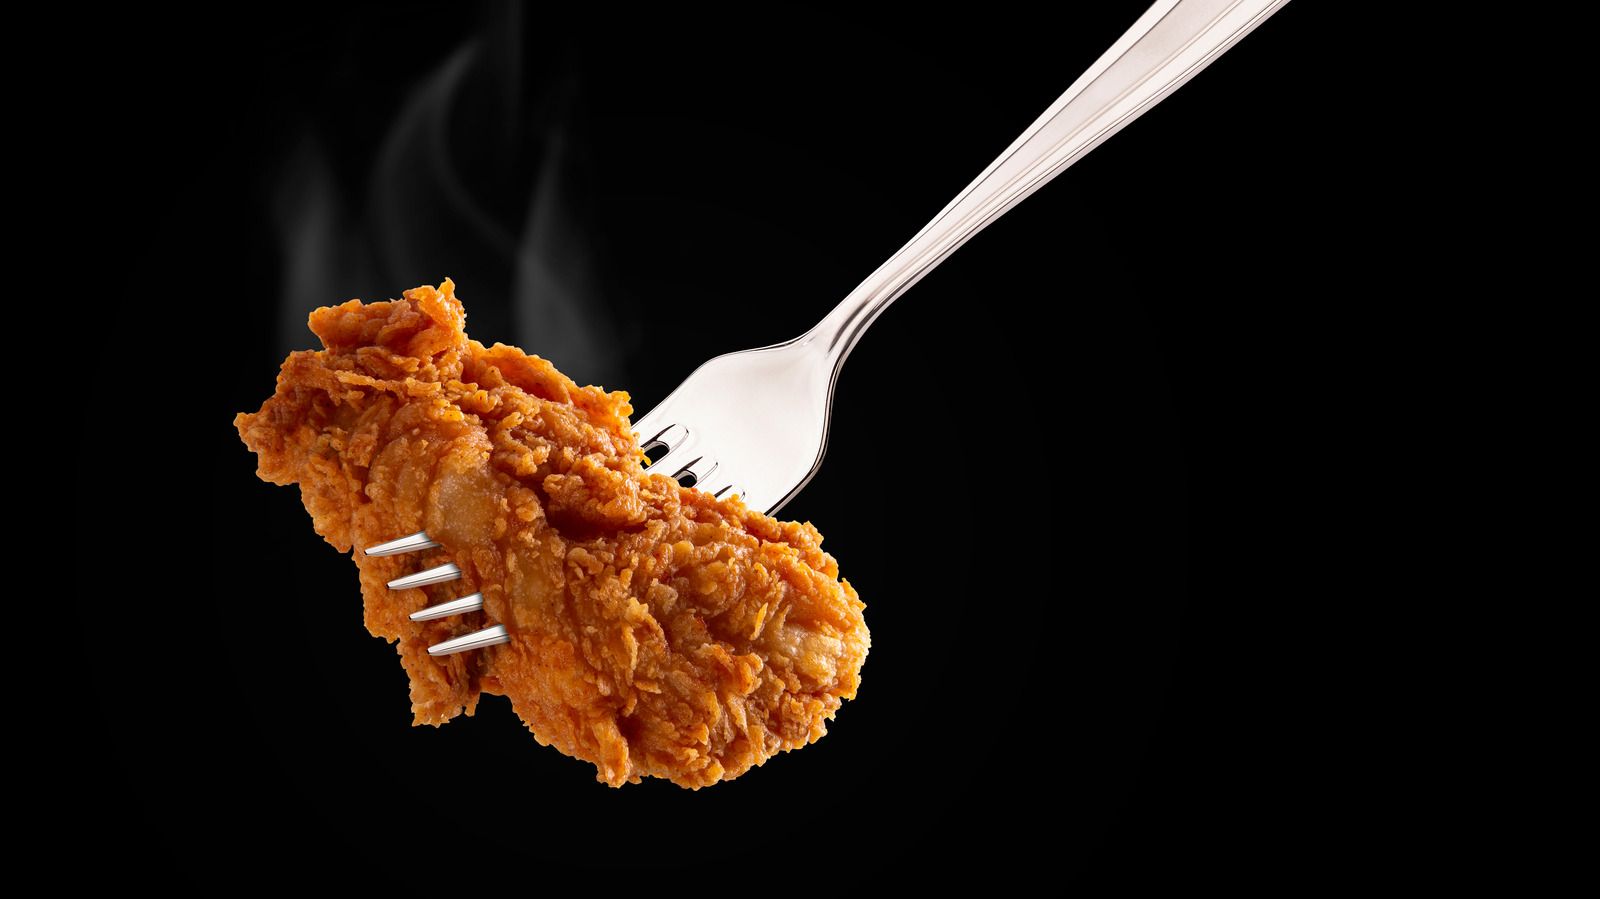 أثر تناول لحم الدجاج على مستوى الكوليسترول في الجسم